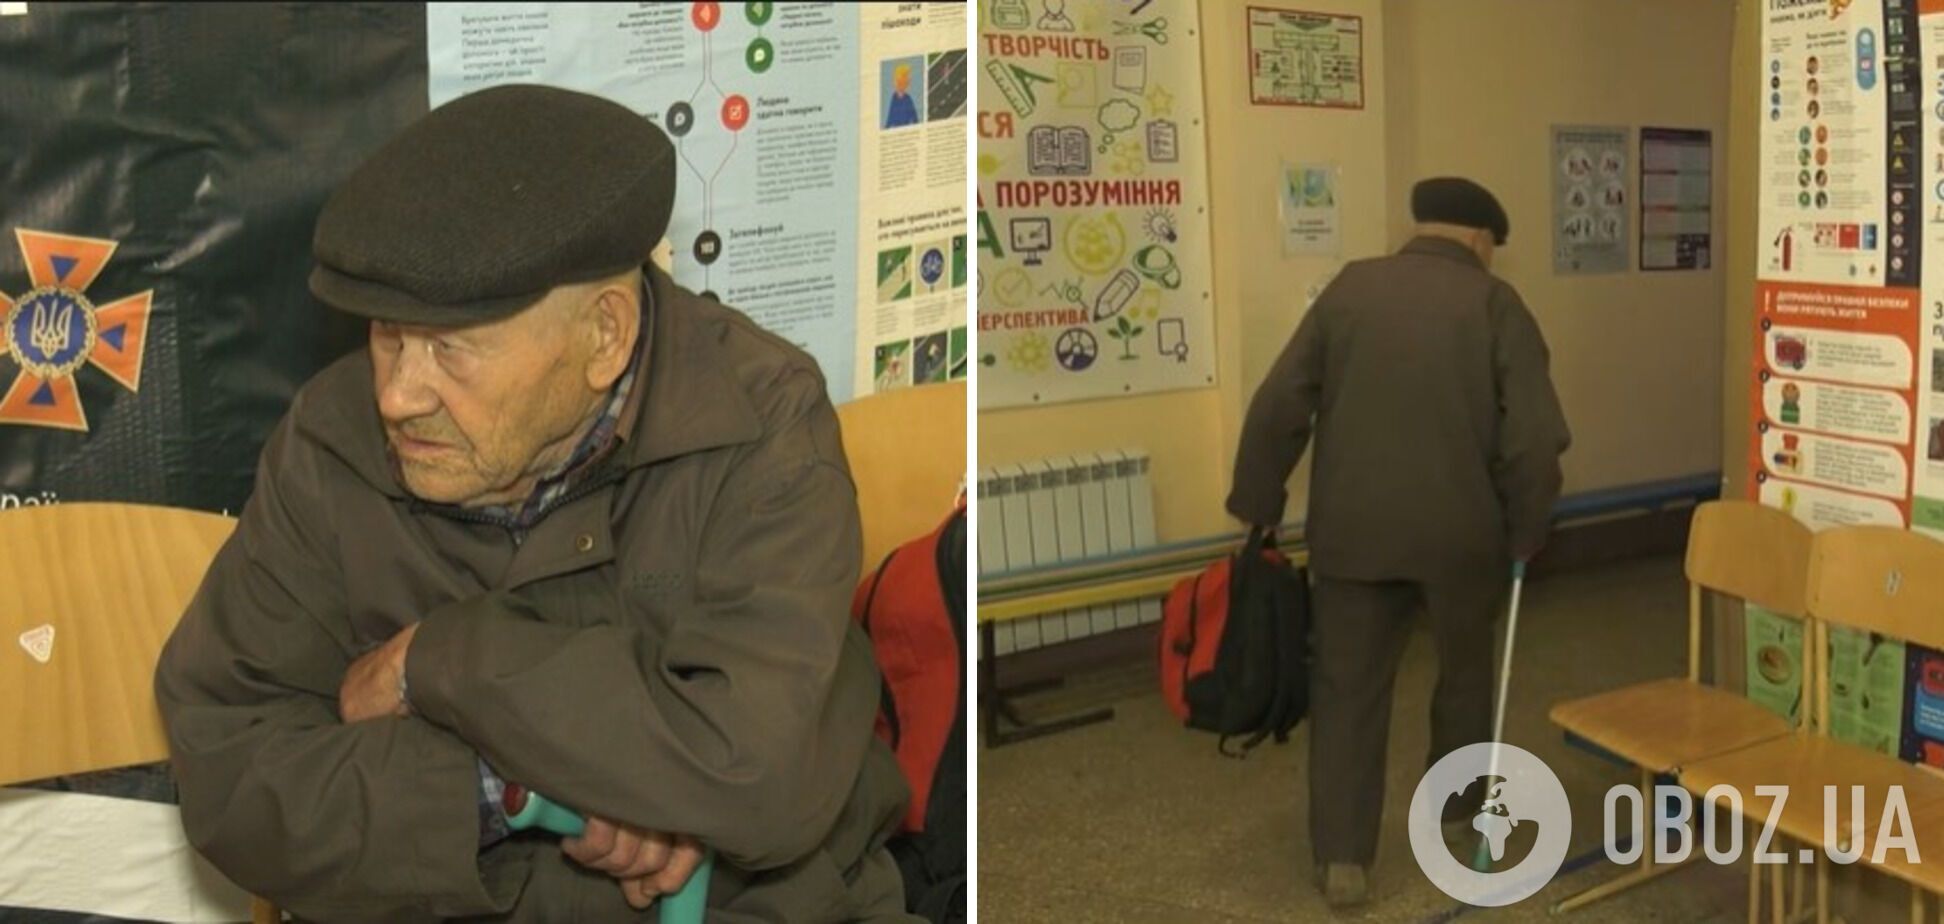 'Історія, яка вражає': 88-річний дідусь вийшов з окупованої частини Очеретиного, щоб не отримувати громадянство Росії. Відео
